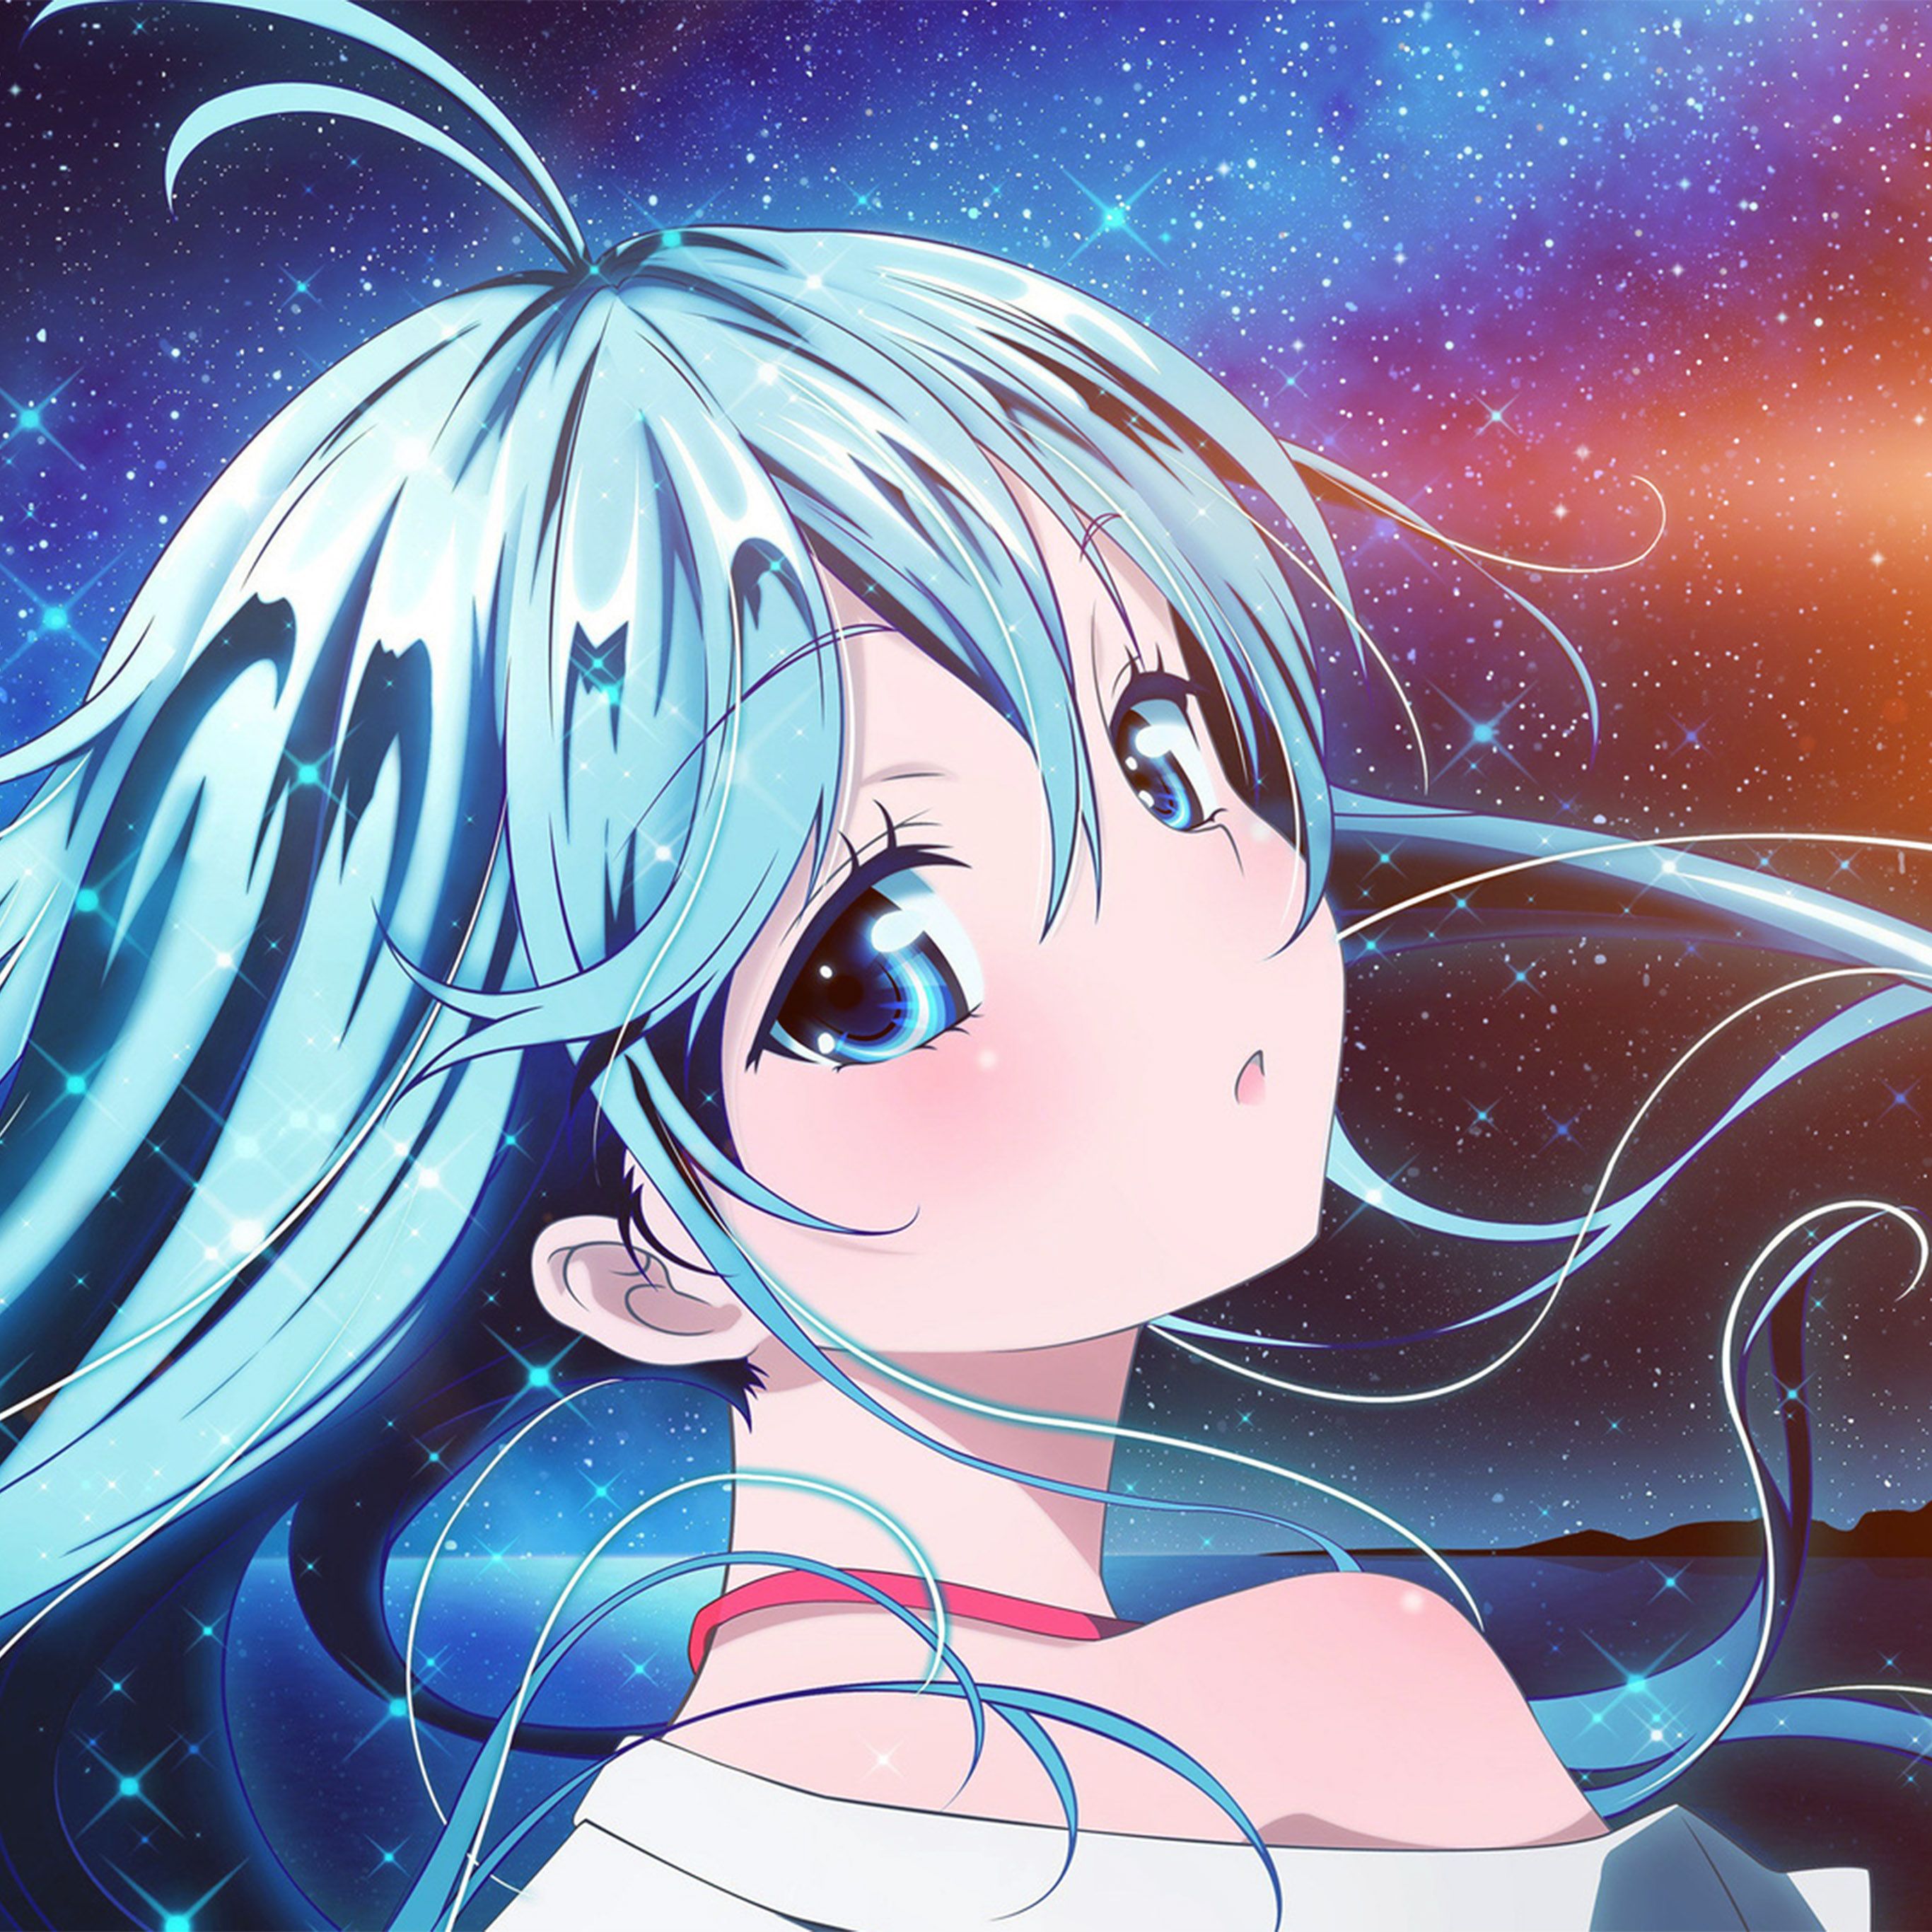 Anime Blue Girl Wallpaper Free Anime Blue Girl Background